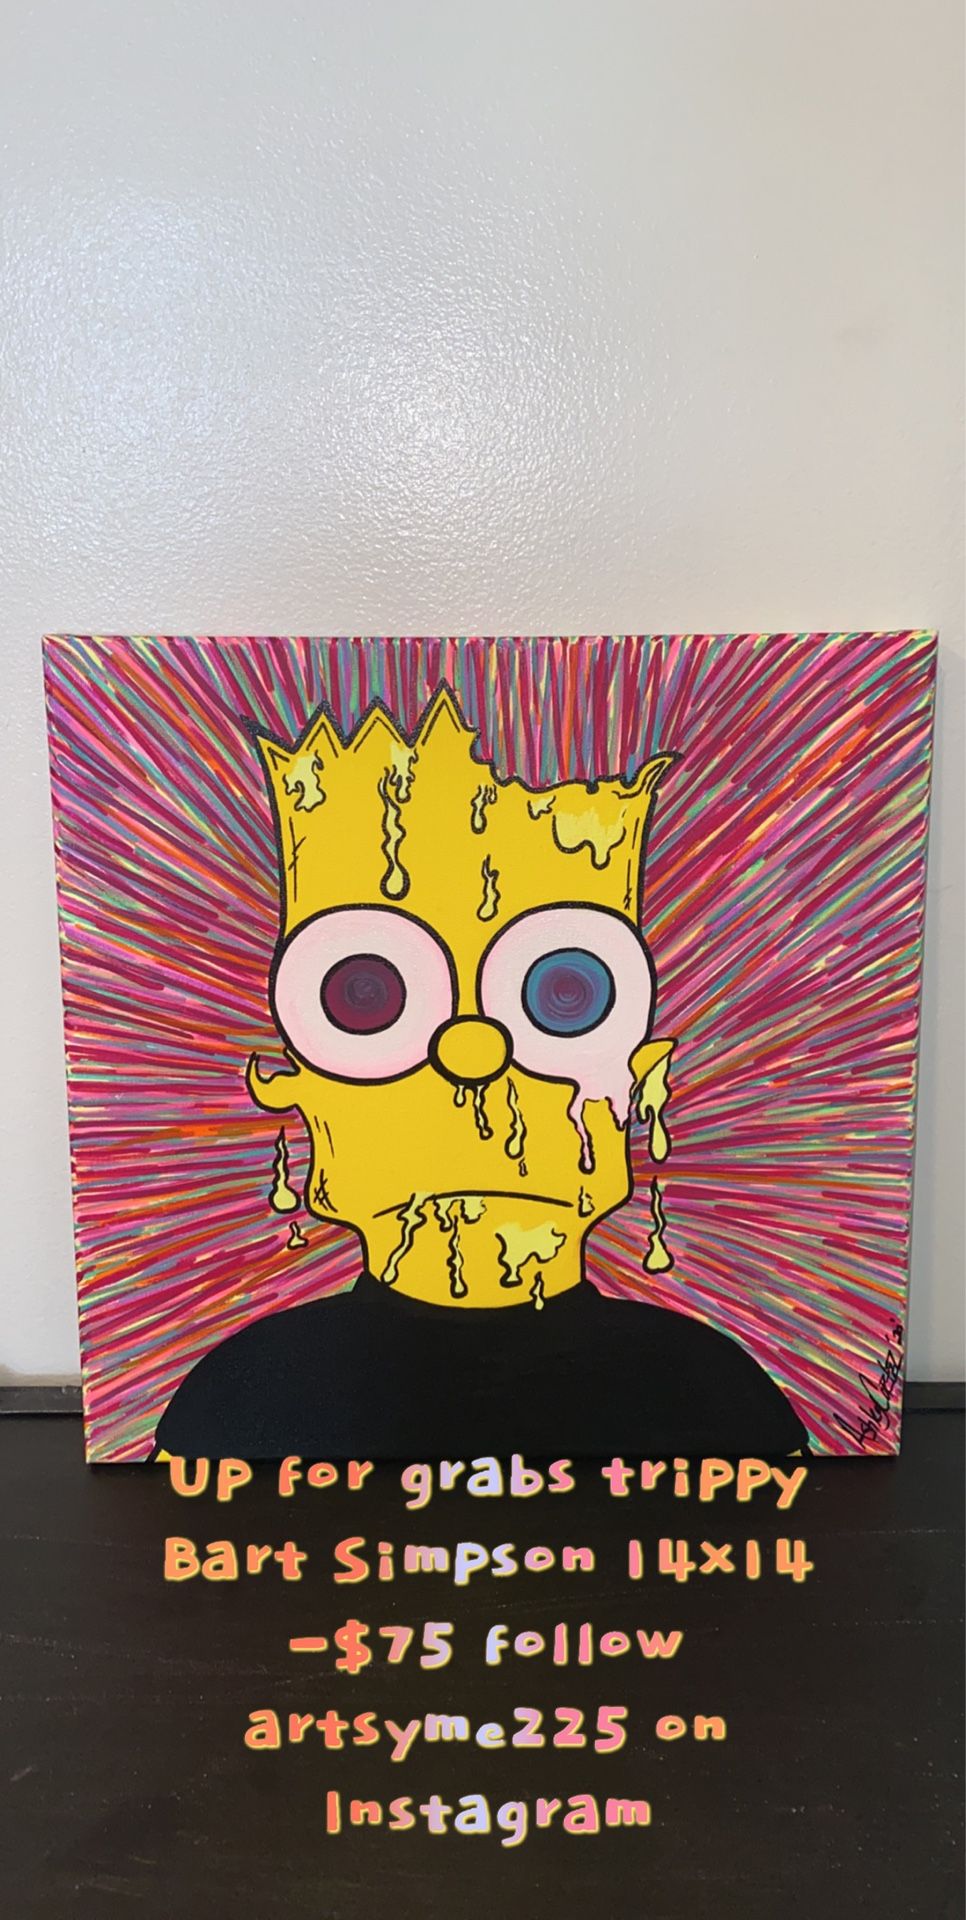 N-E-W-Trippy Bart Simpson Local Artist